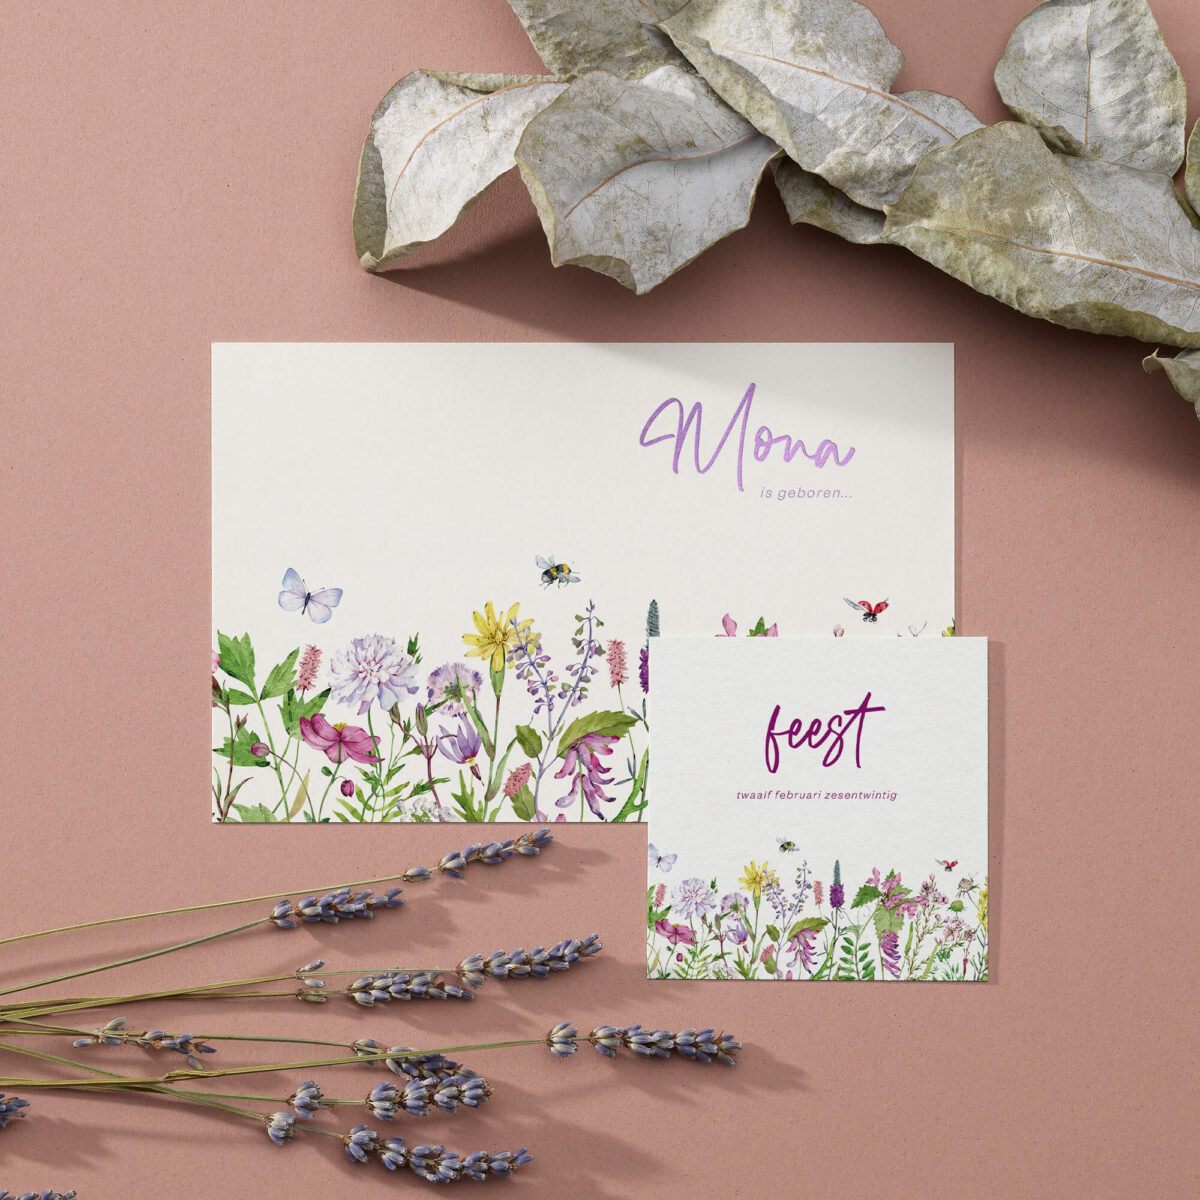 voorzijde babyborrelkaartje field of lilac met geschilderde veldbloemen en tekst in paars